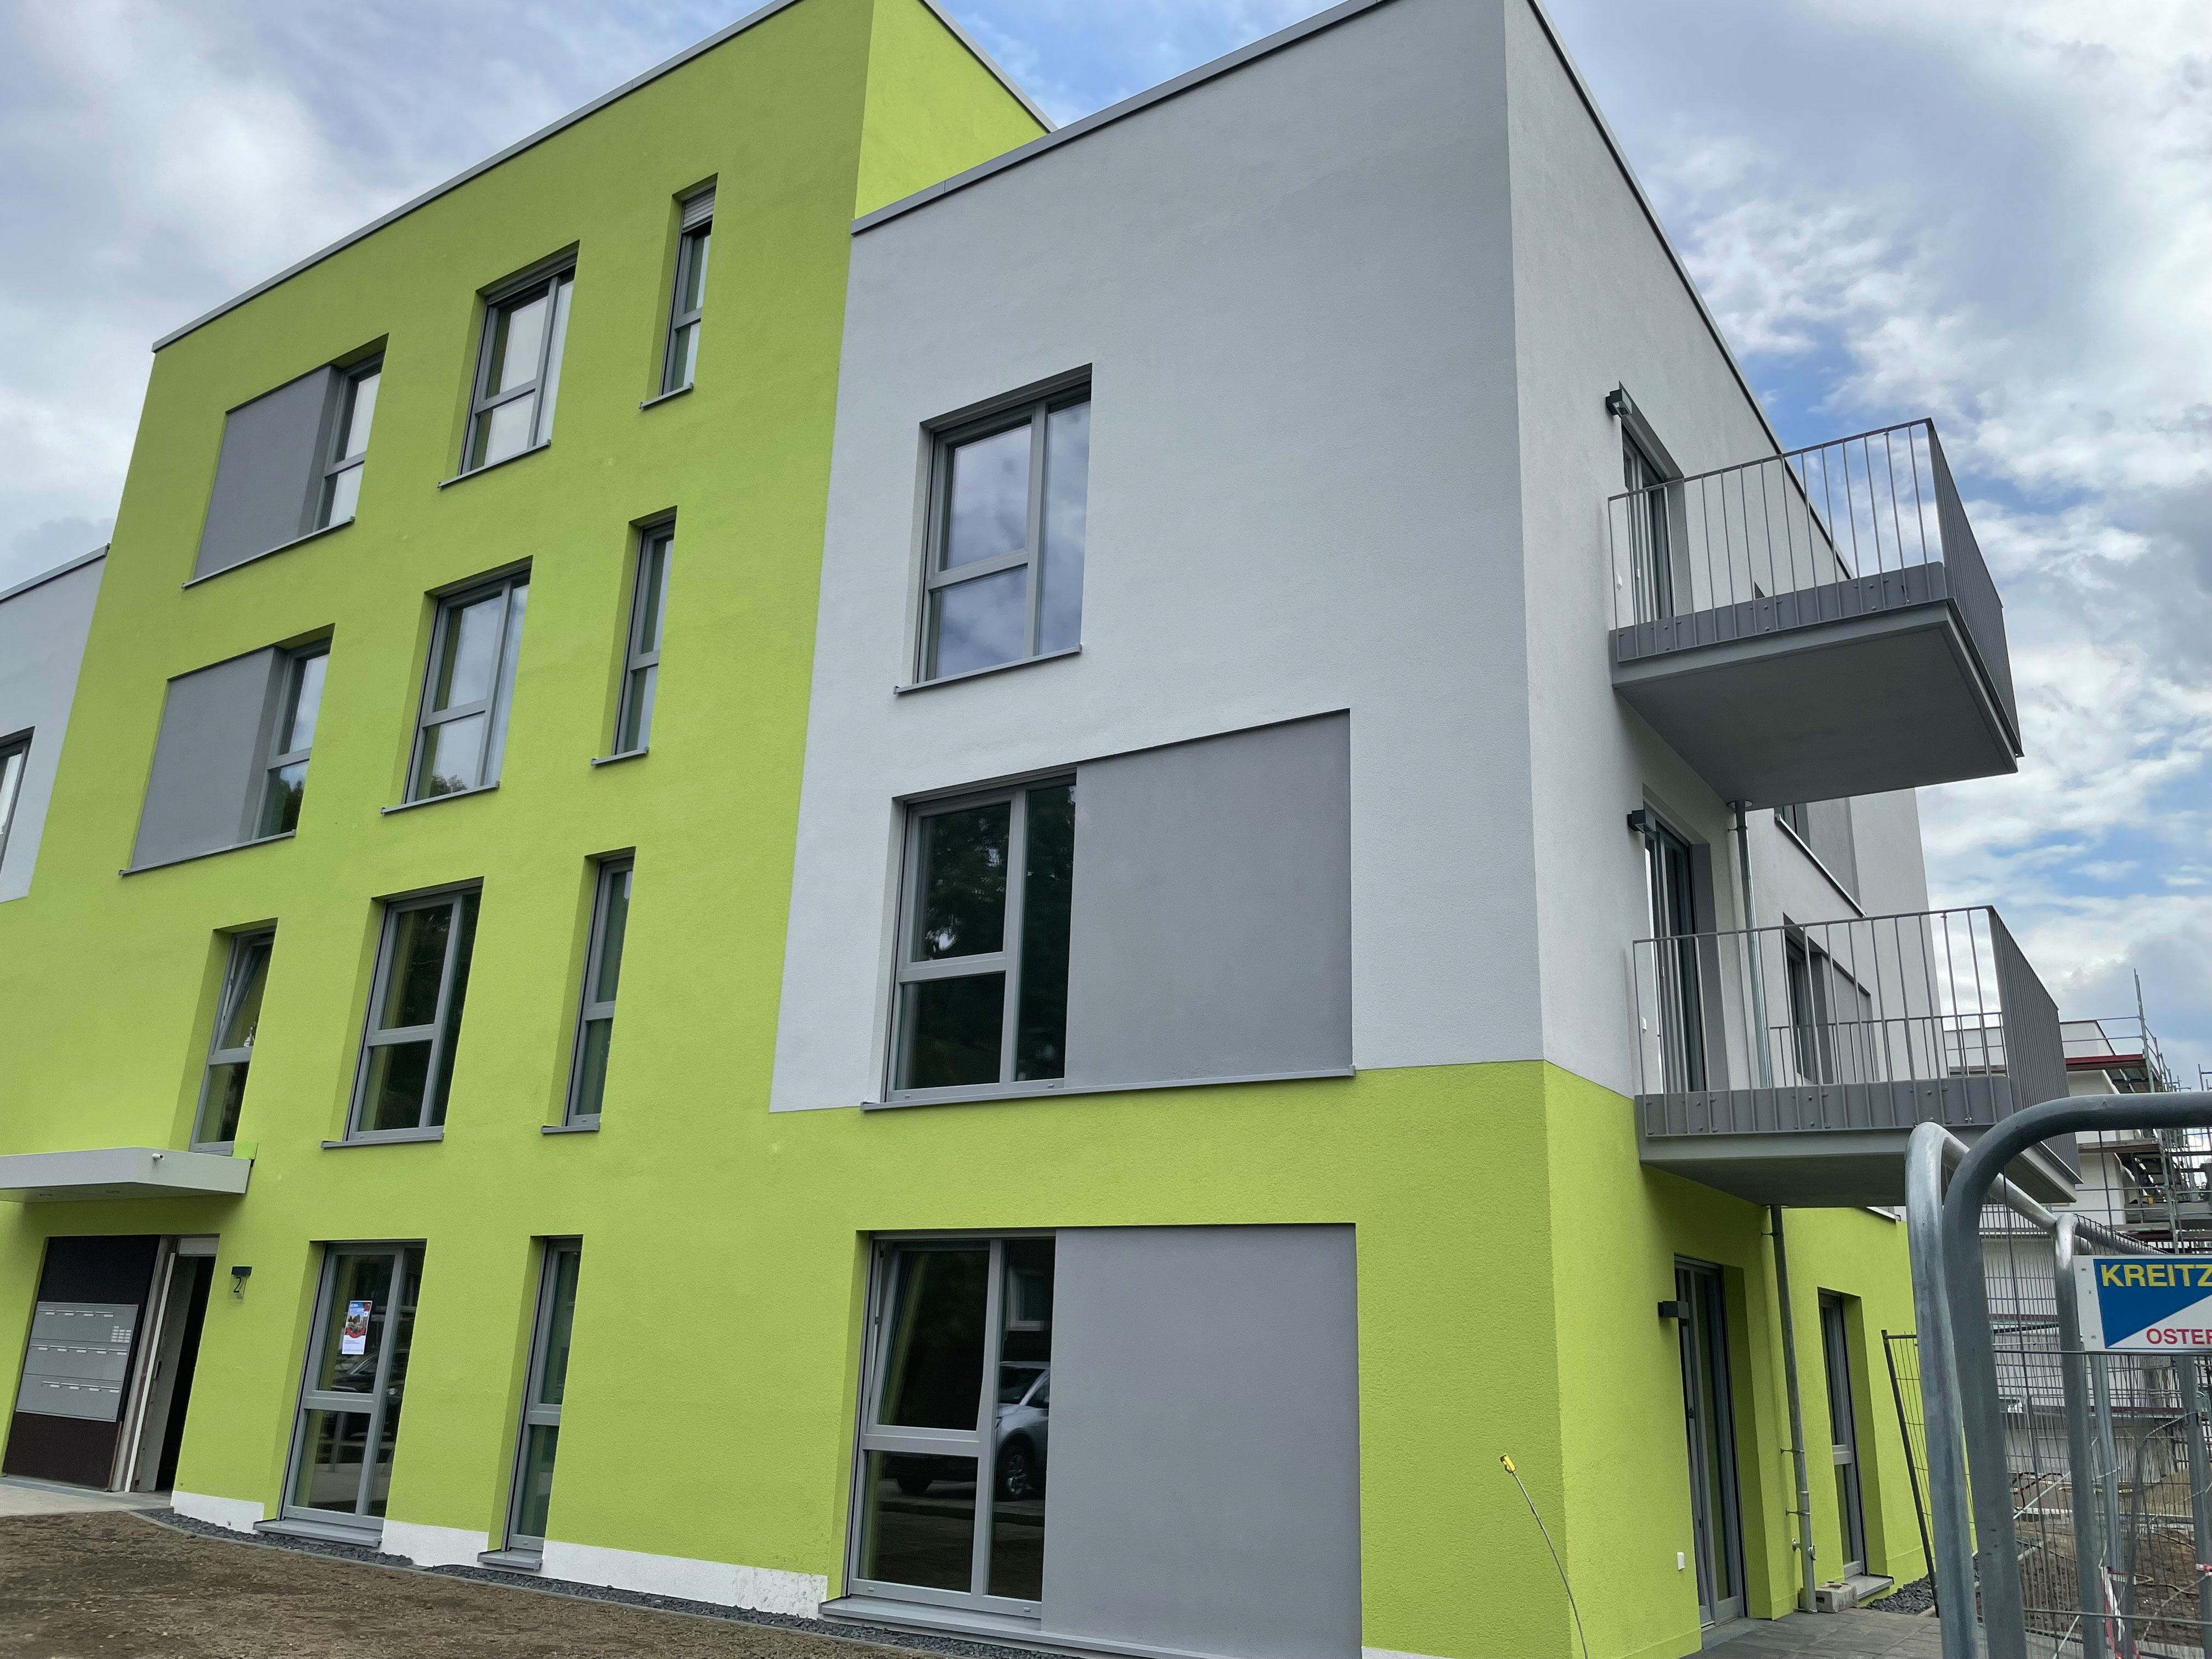 Neubau eines grün-grauen Wohnblocks mit Balkonen, vorne rechts ein Bauzaun